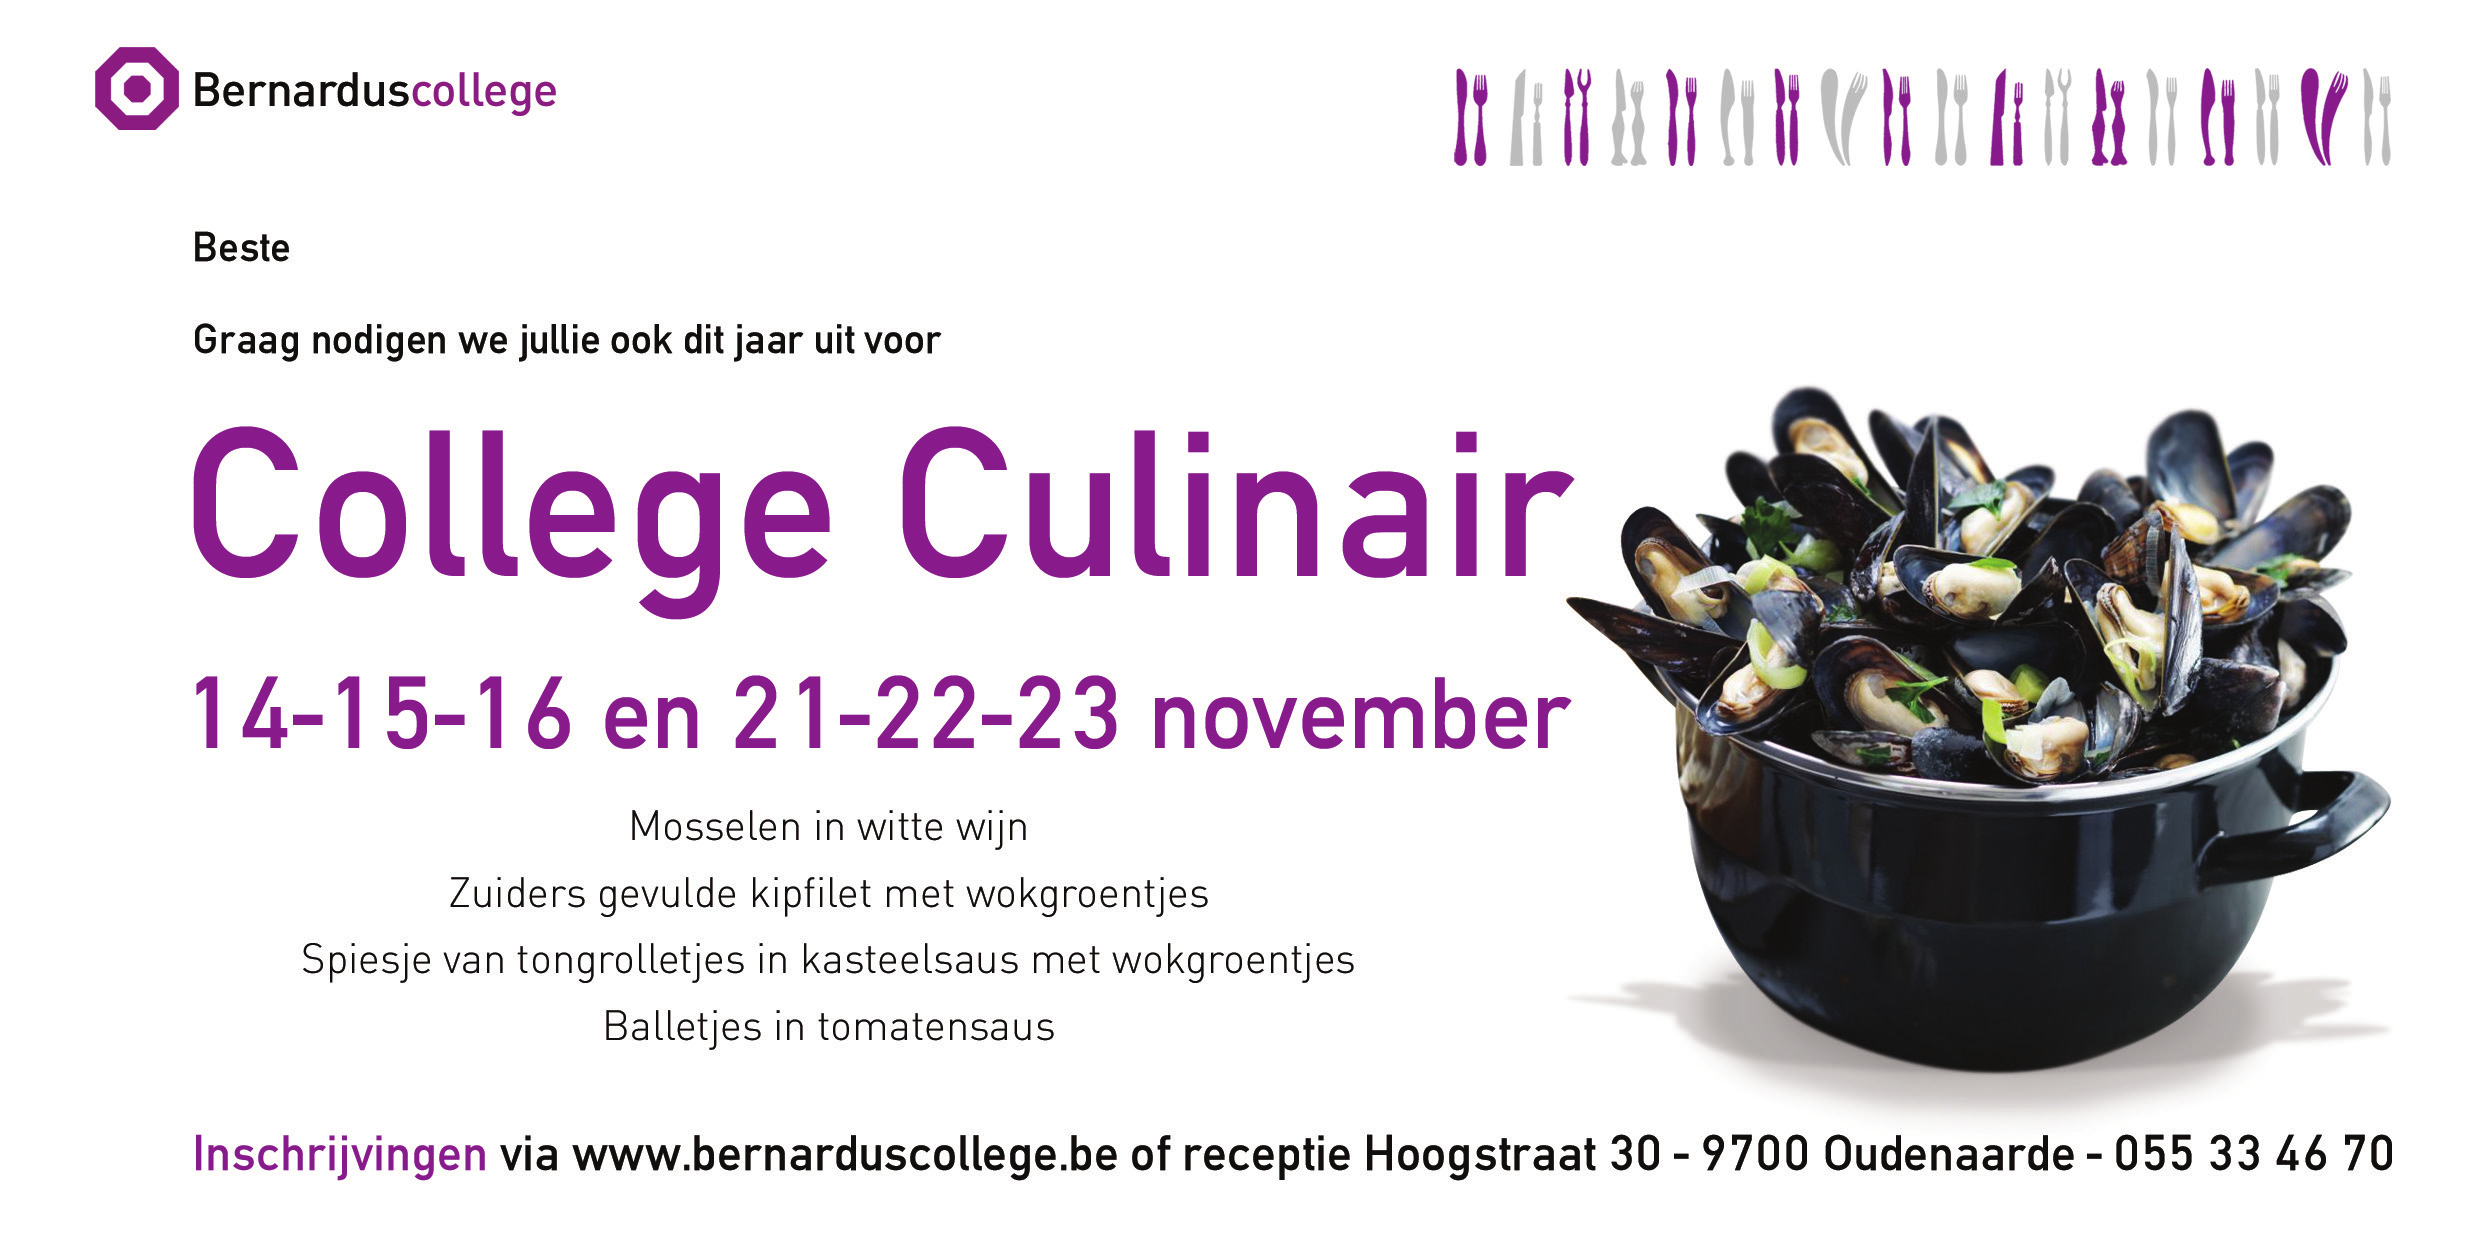 Wie met de tradities van het Bernarduscollege vertrouwd is, houdt elk jaar een weekend van november vrij voor College Culinair.